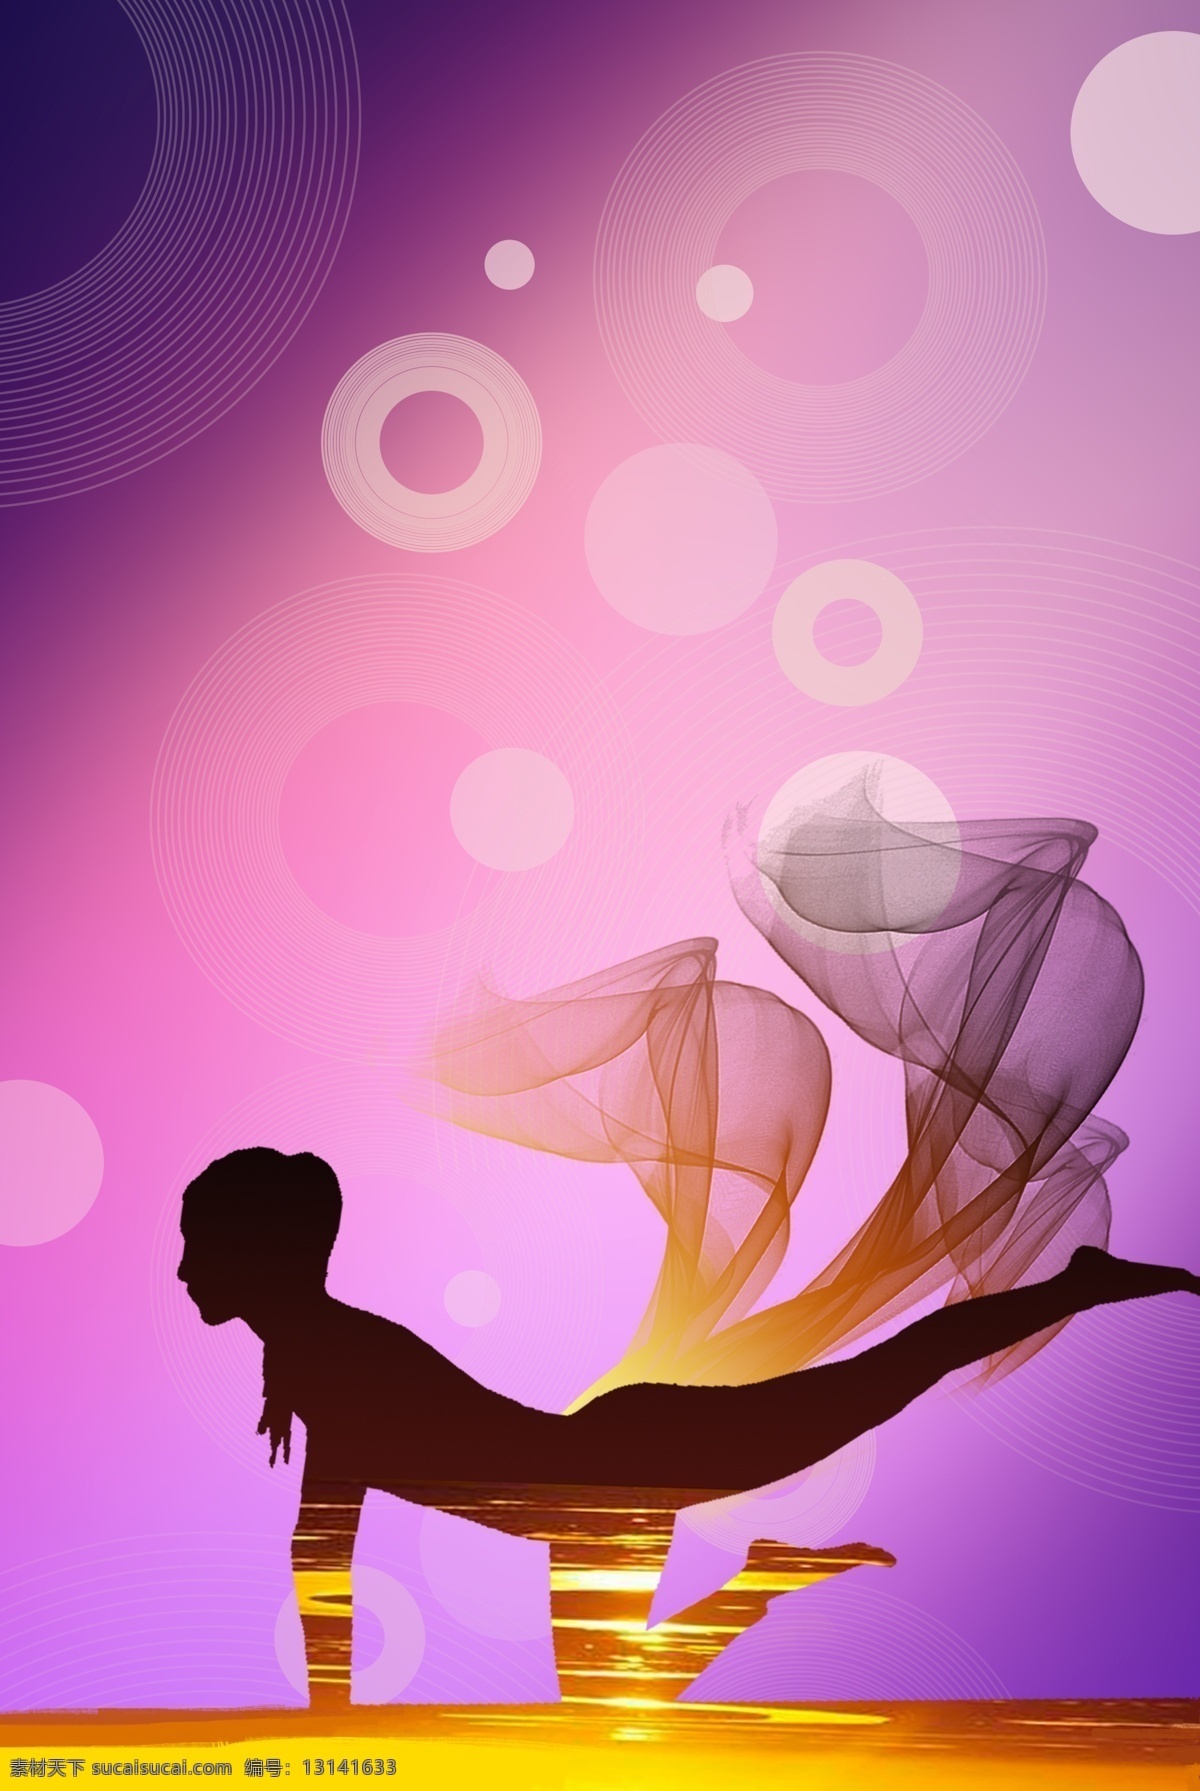 瑜伽 健身 运动 背景 健康 瑜伽垫 圆圈 紫色 简约